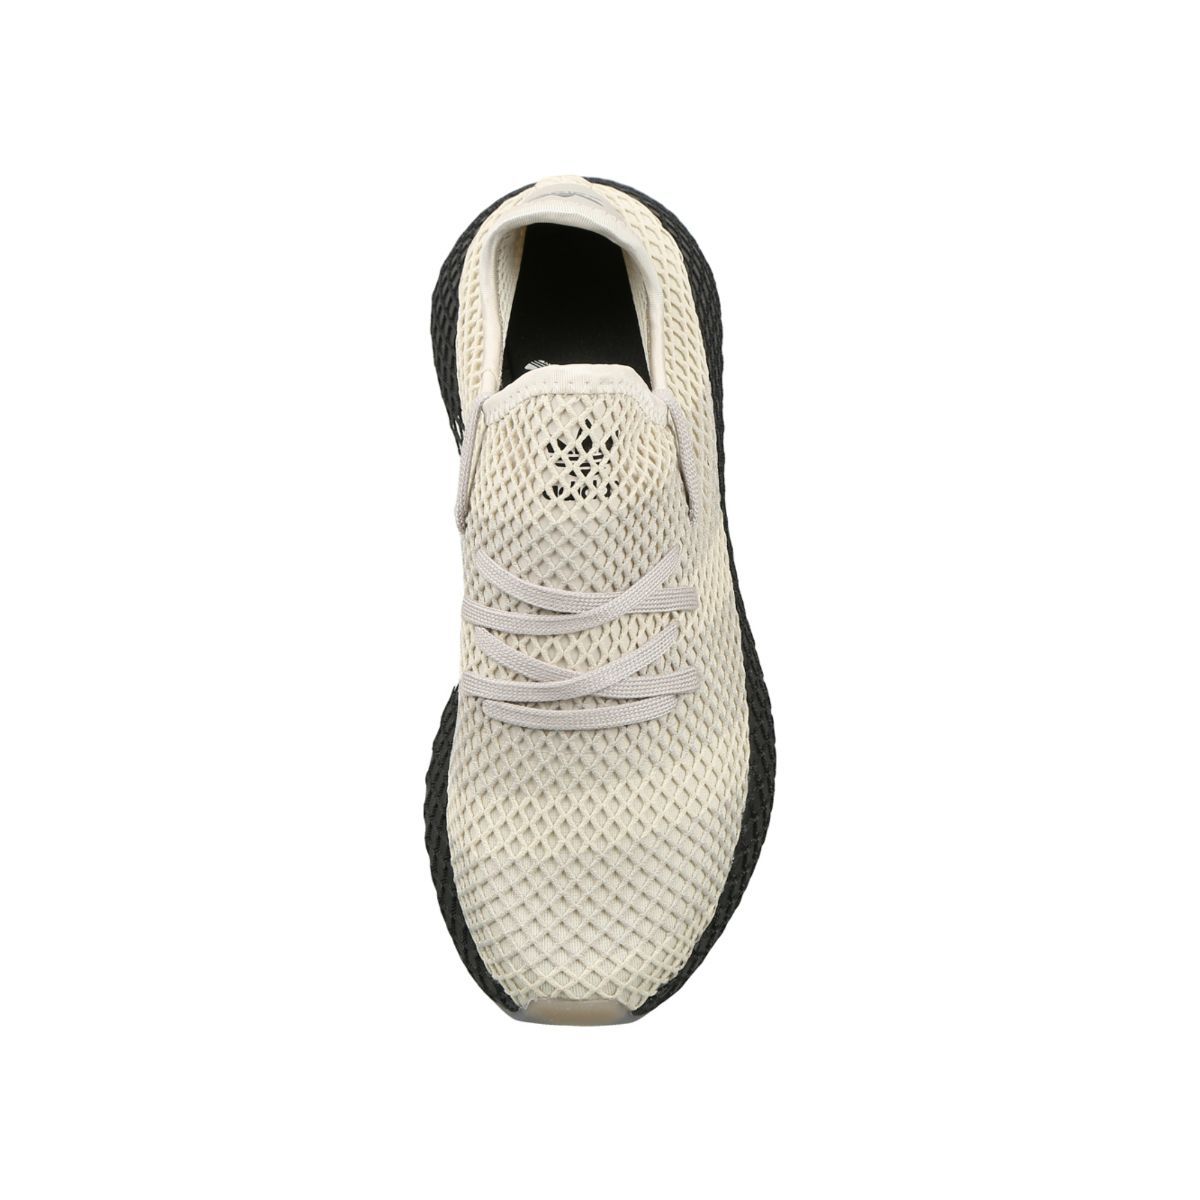 Buy adidas Originals Women's Deerupt Runner W Cblack, Cblack, Chapnk  Sneakers - 6 UK/India (39.33 EU)(CQ2909) at Amazon.in